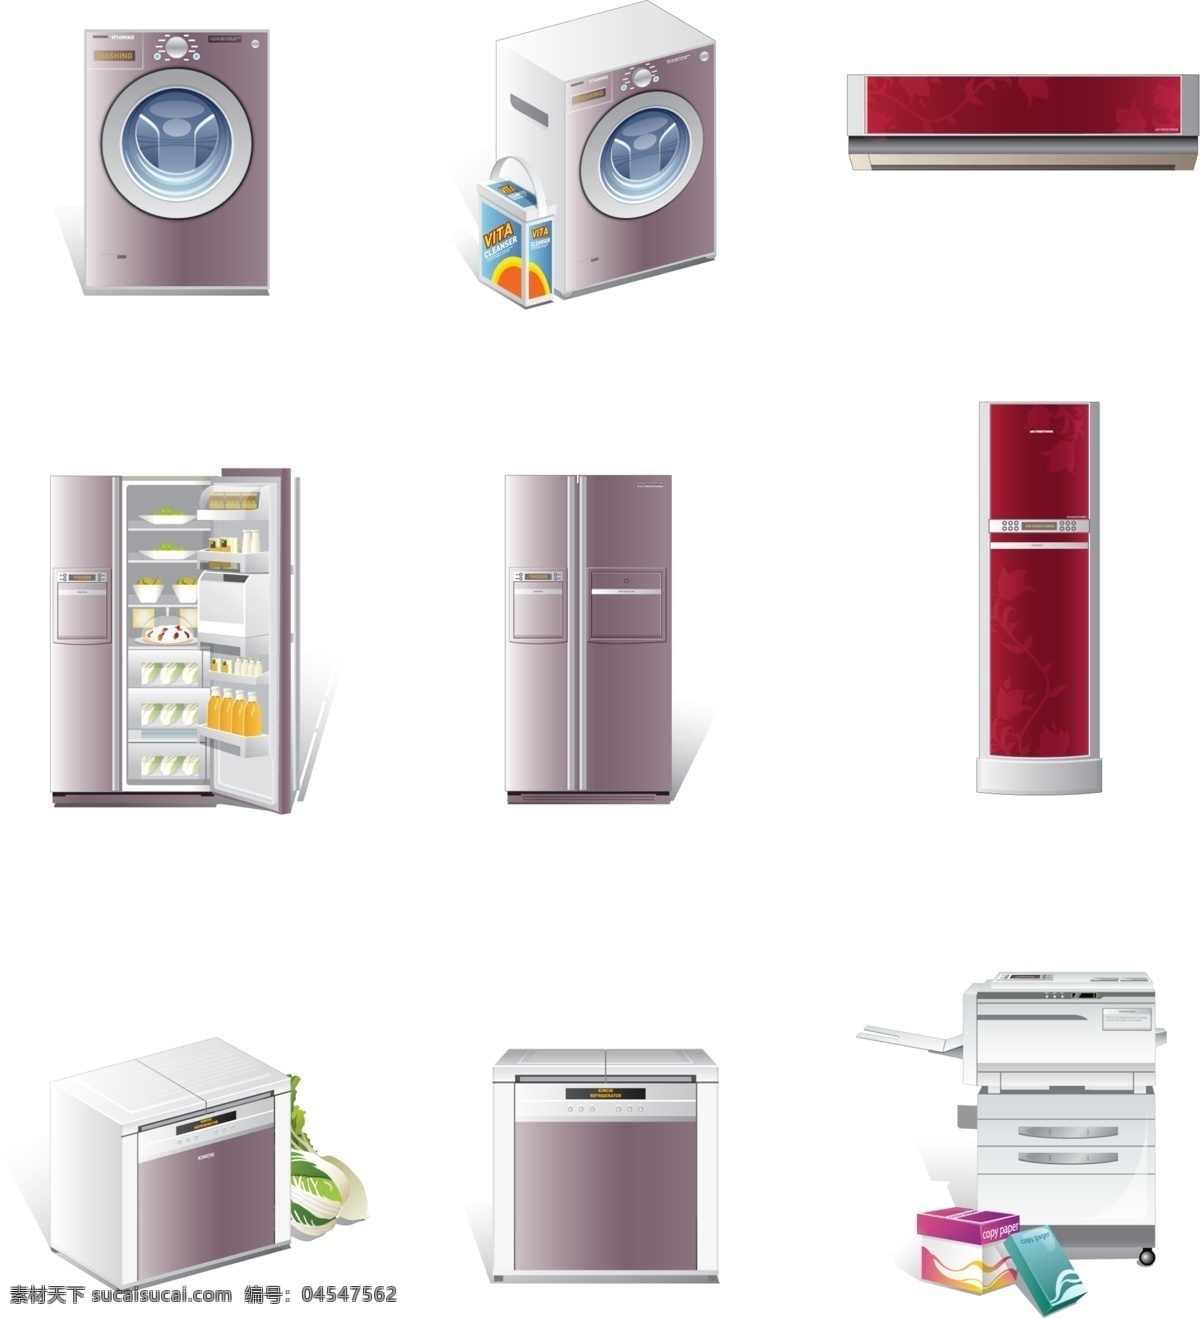 大型 家用电器 矢量图 烤箱 滚筒洗衣机 挂式空调 柜式空调 双开门冰箱 复印件 其他矢量图